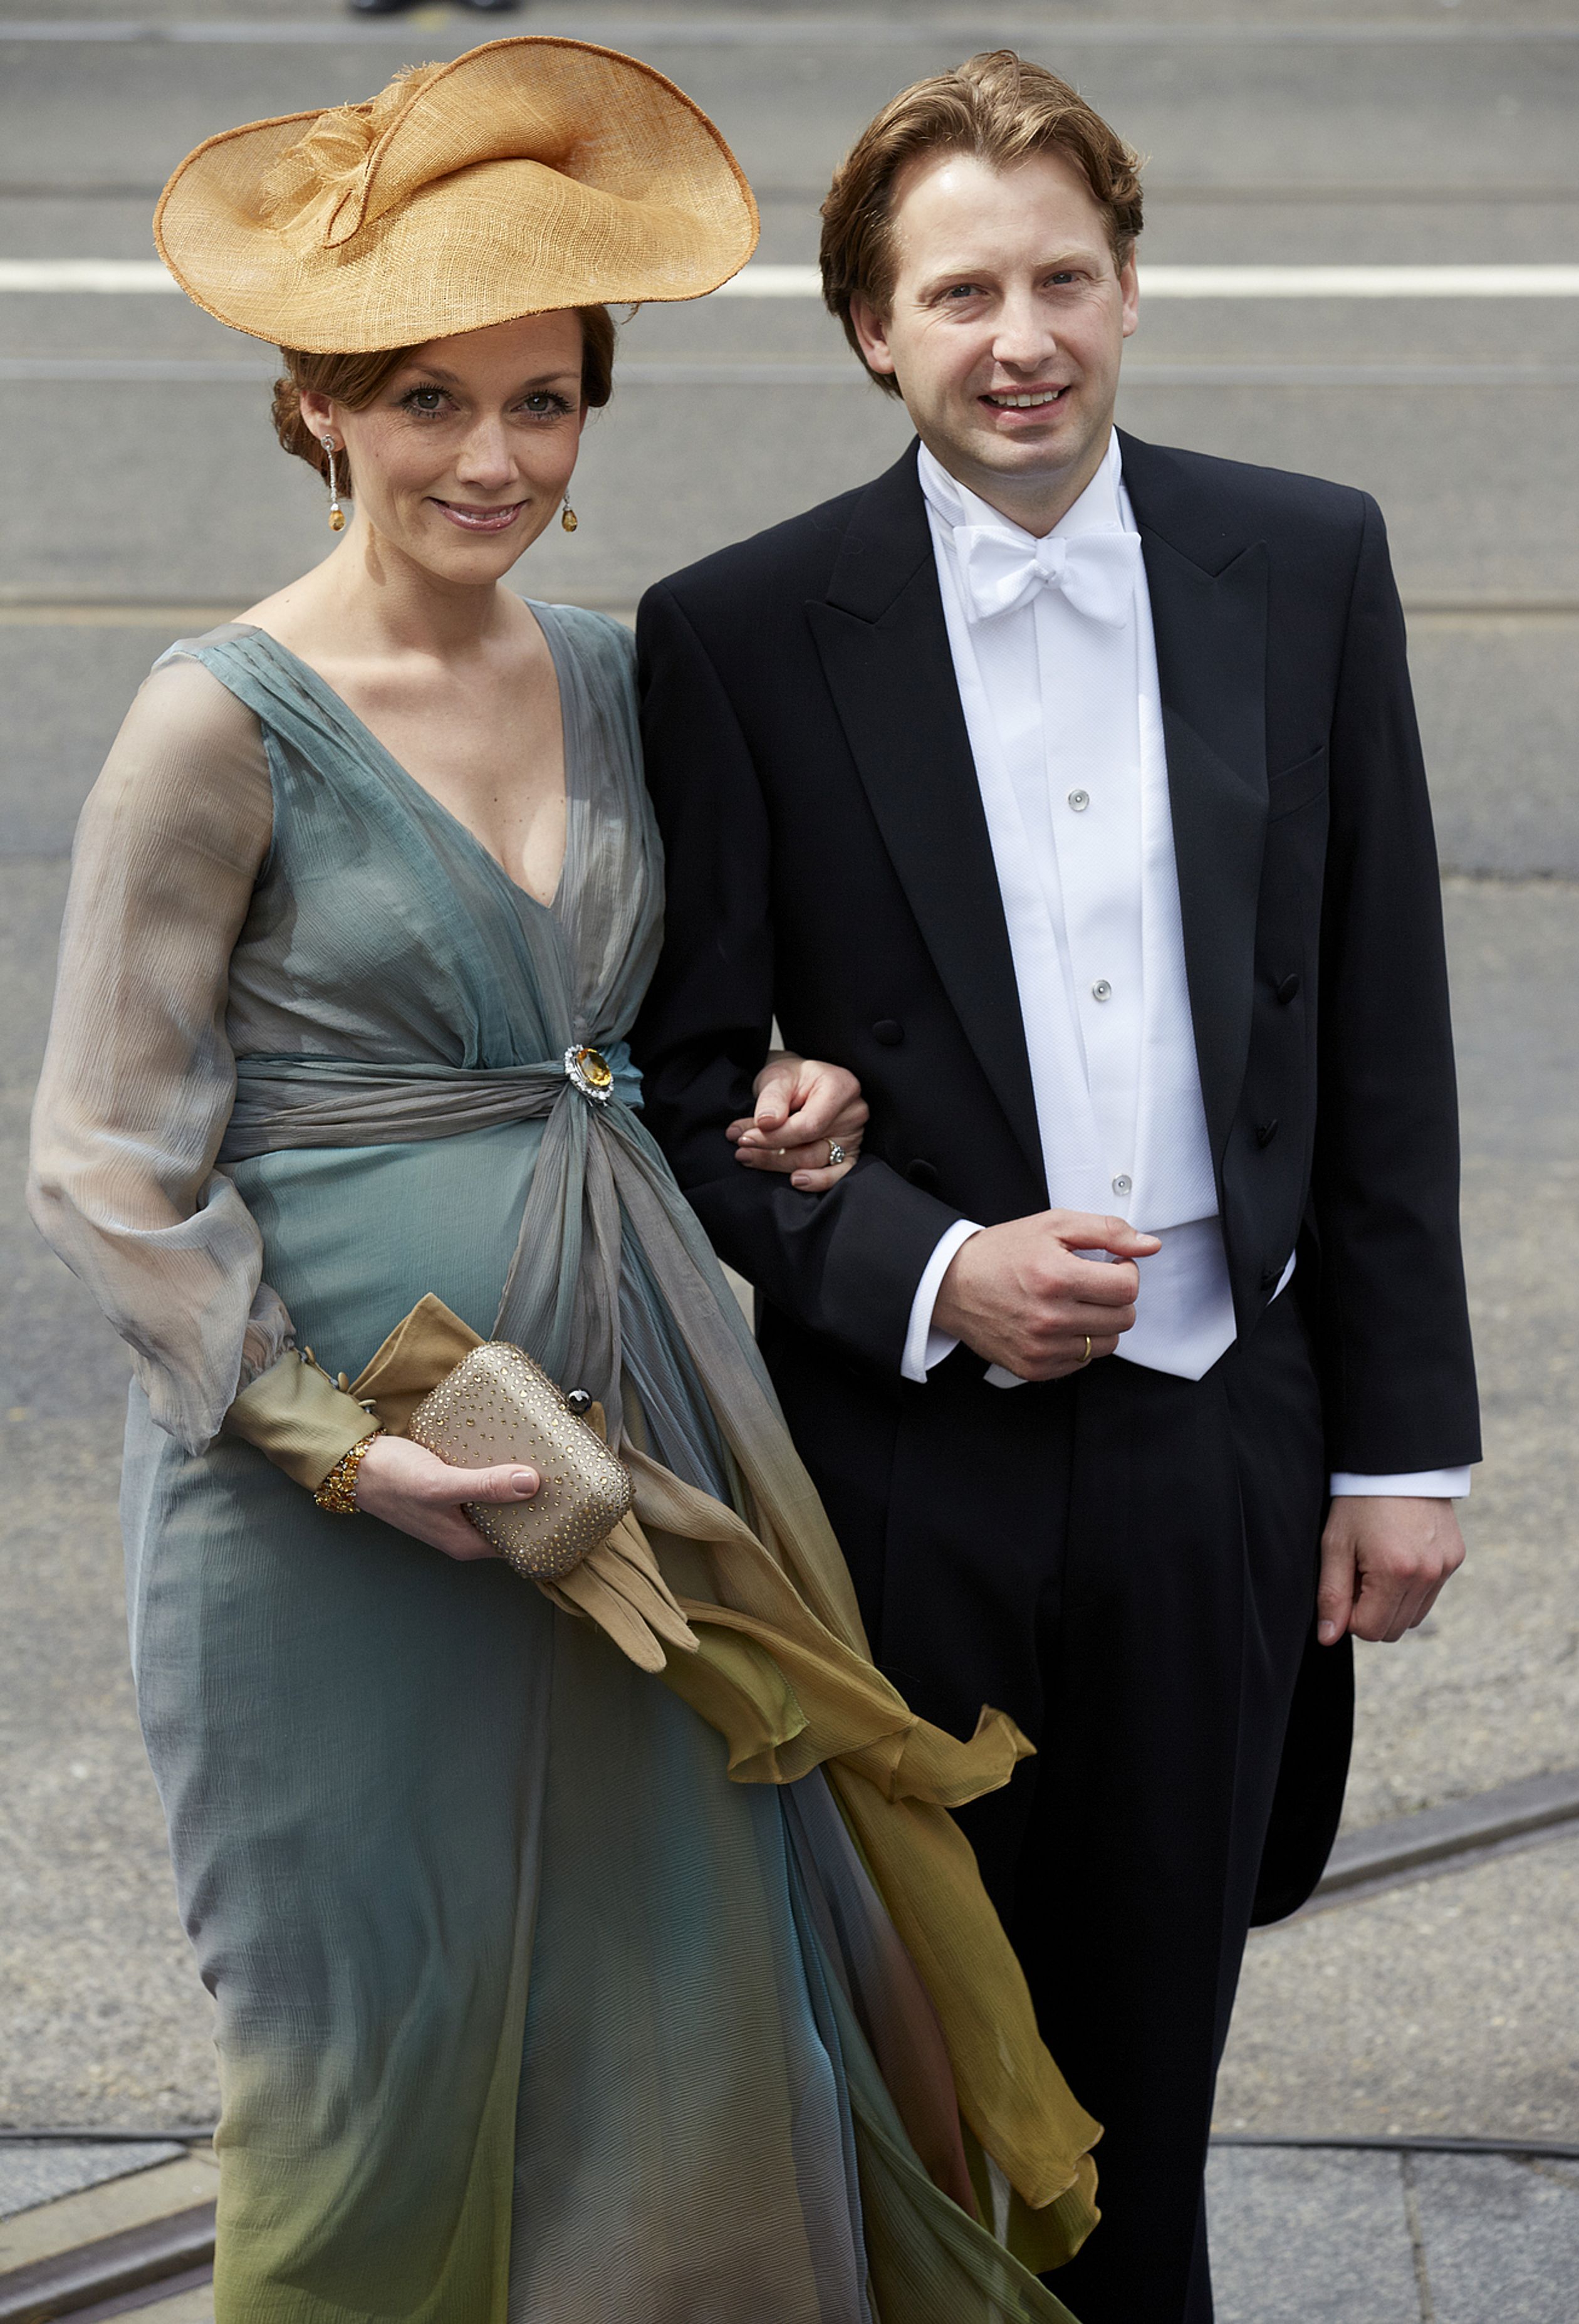 Prinses Aimée en prins Floris komen aan bij de Nieuwe Kerk in Amsterdam tijdens de inhuldiging van koning Willem-Alexander in 2013. De zwangere Aimée draagt een jurk die ze geleend heeft van Máxima.